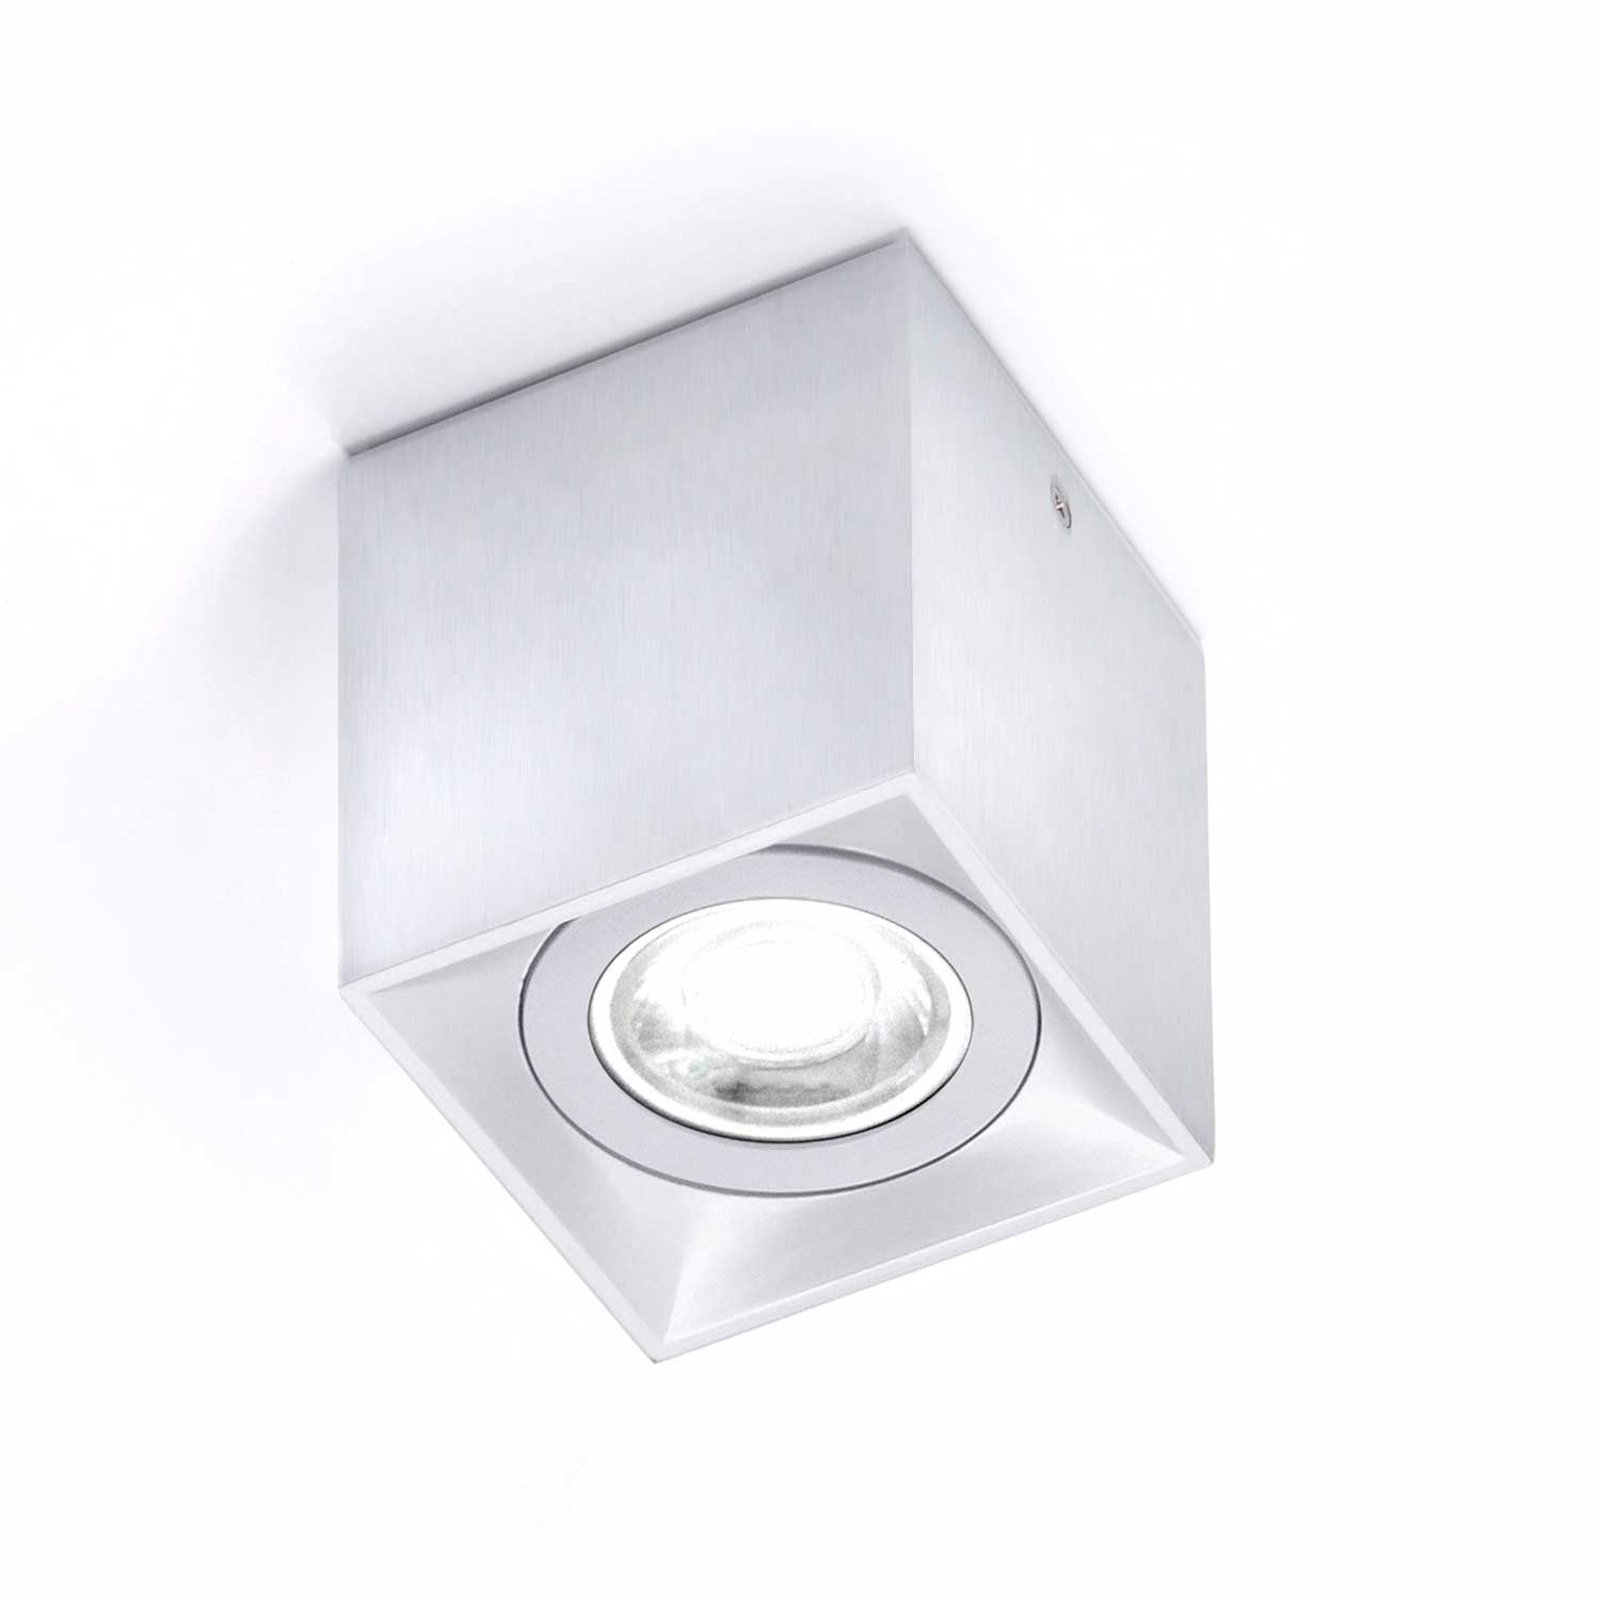 Cubic ceiling light Dau Spot, aluminium